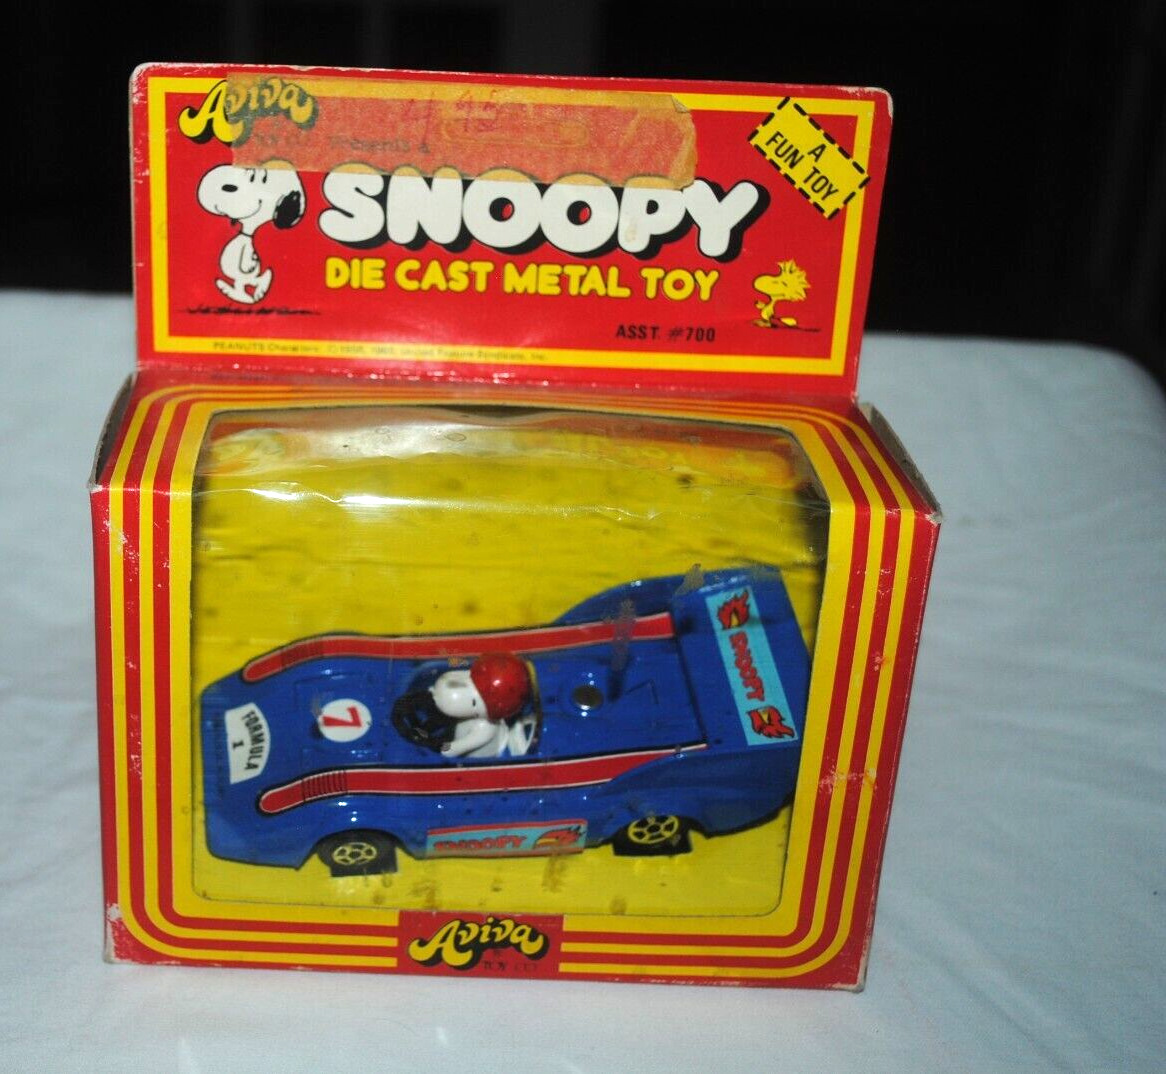 Snoopy die-cast metal toy, blue race car, Aviva, 1975, NM in box